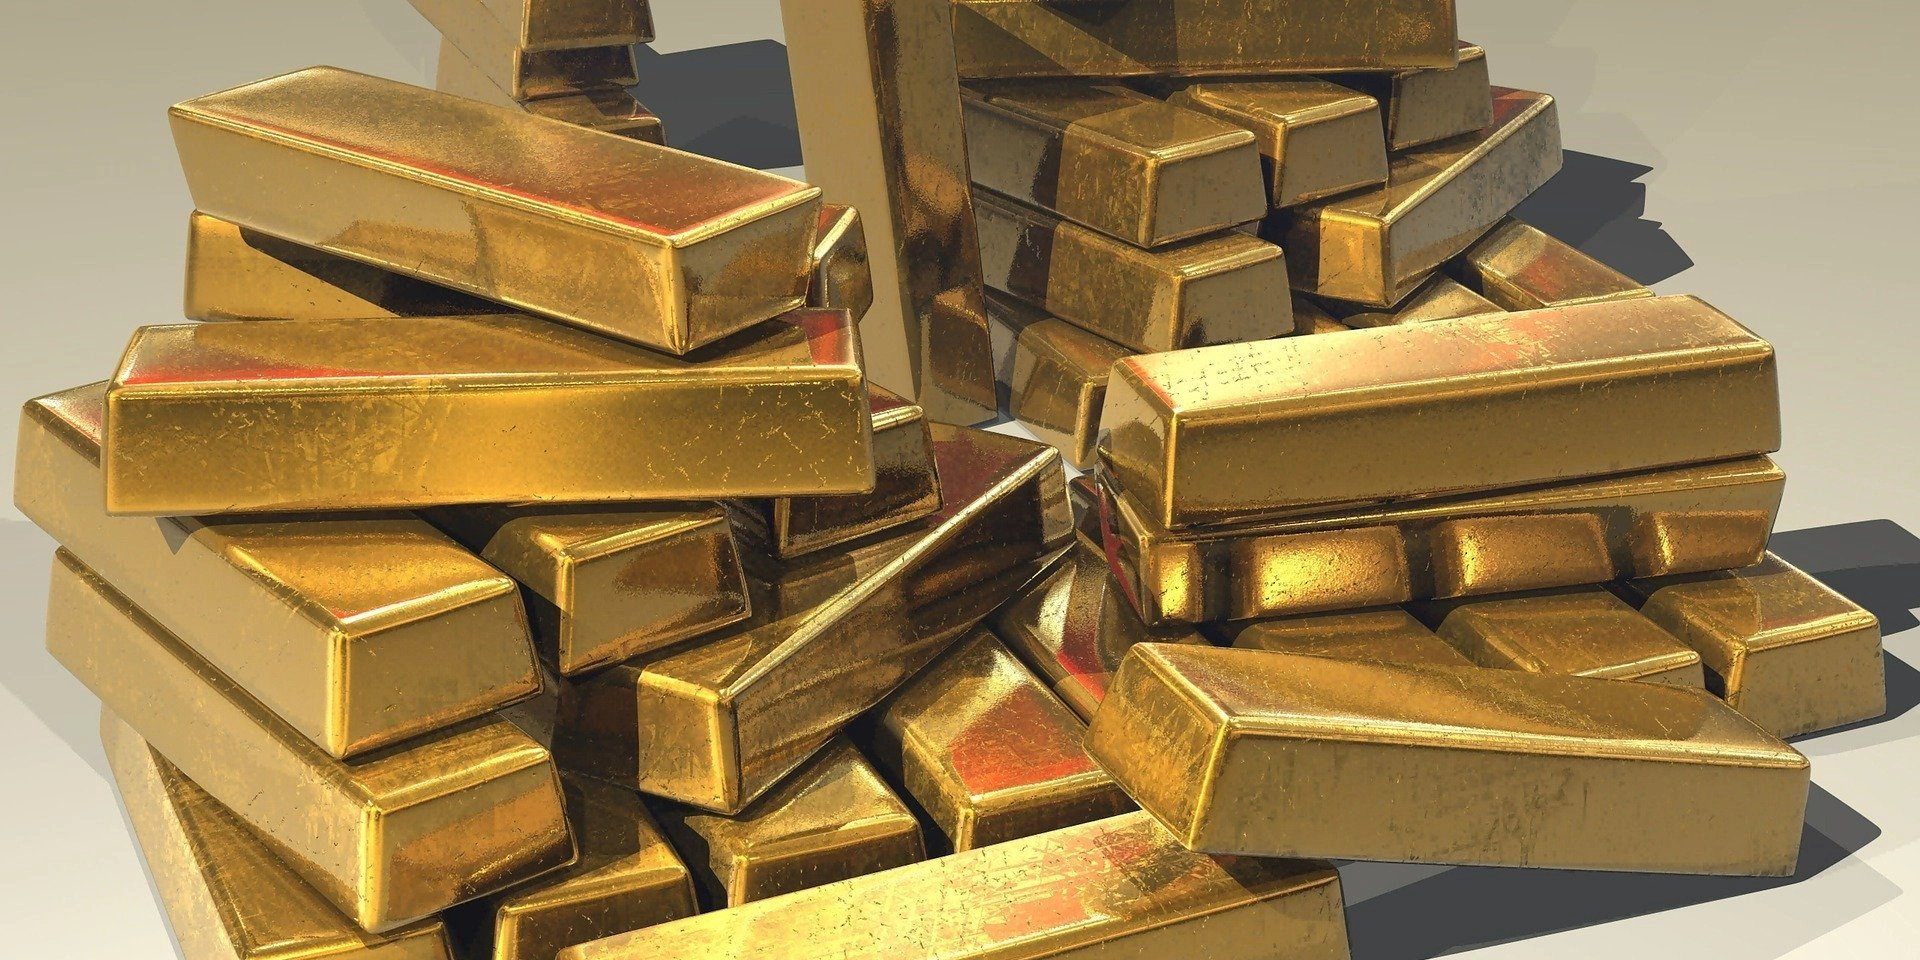 Royal Gold сообщает о рекордной выручке во 2-м квартале 2021 финансового года